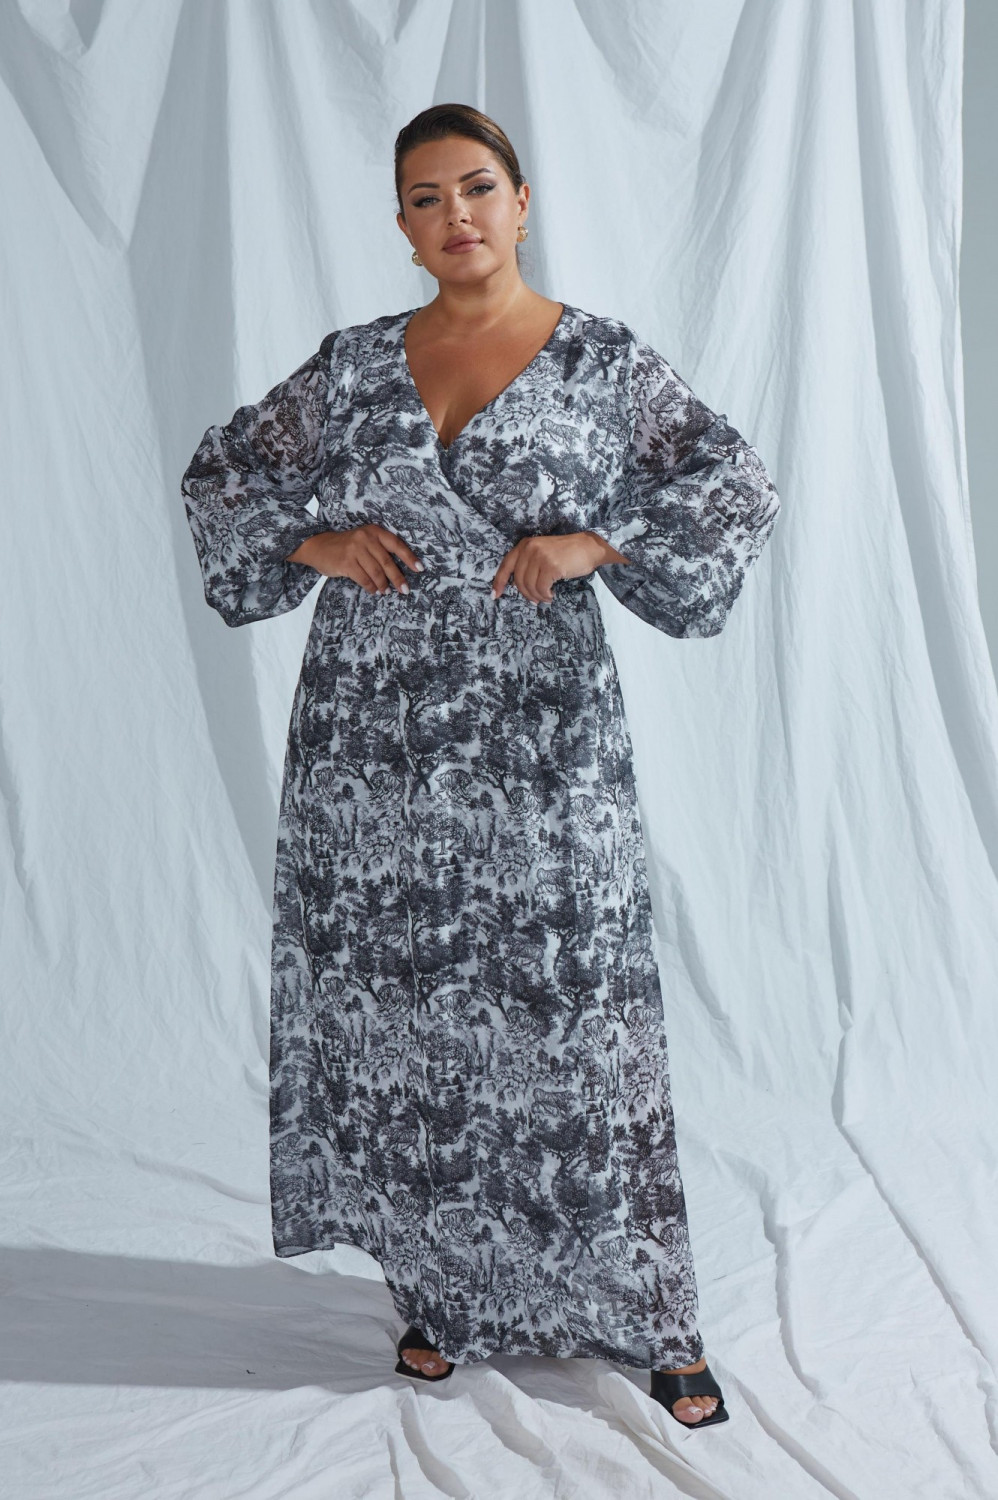 Шифоновое платье макси на шелковой подкладке большого размера купить в интернет-магазине одежды 